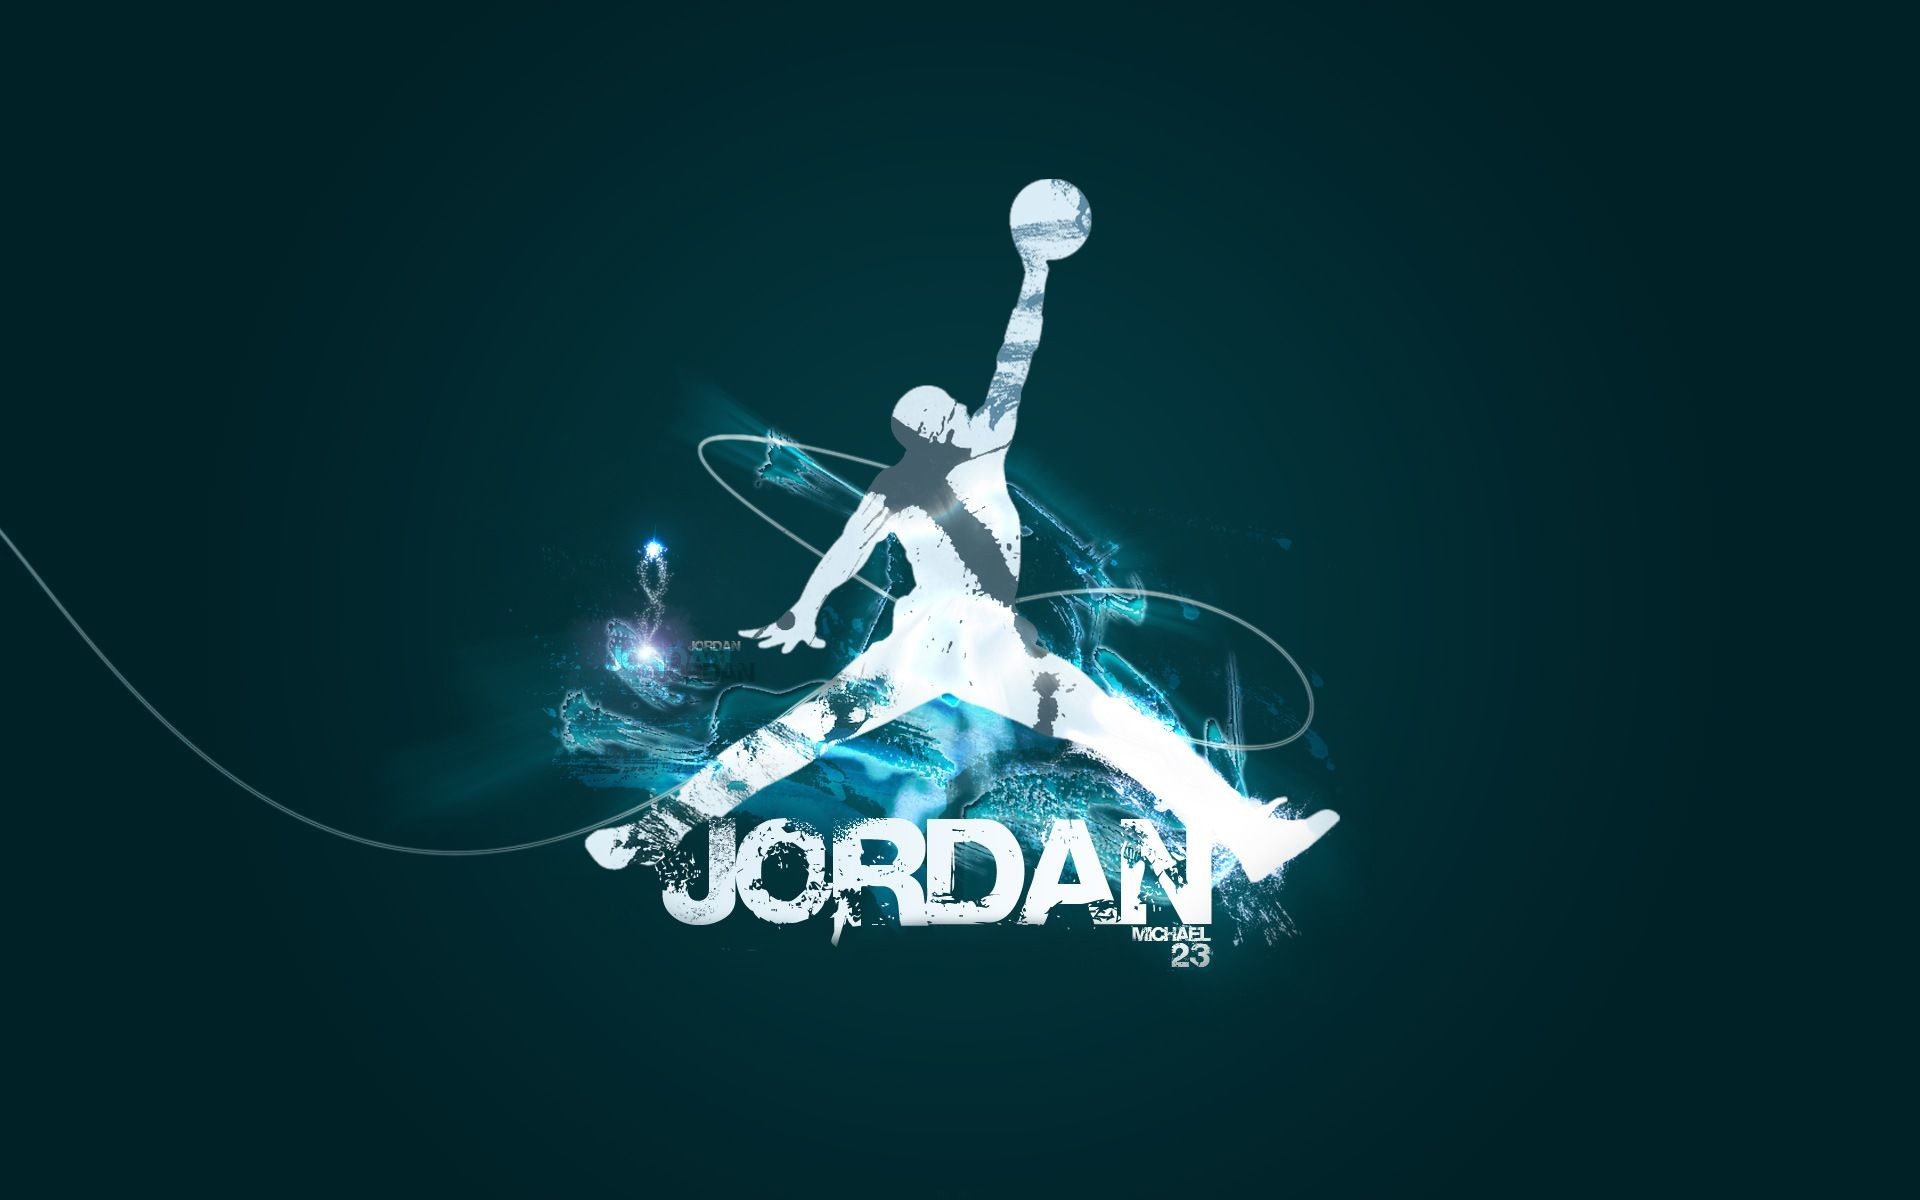 1920x1200 fond d Ã©cran michael jordan; nike 3d air jordan logo wallpaper.